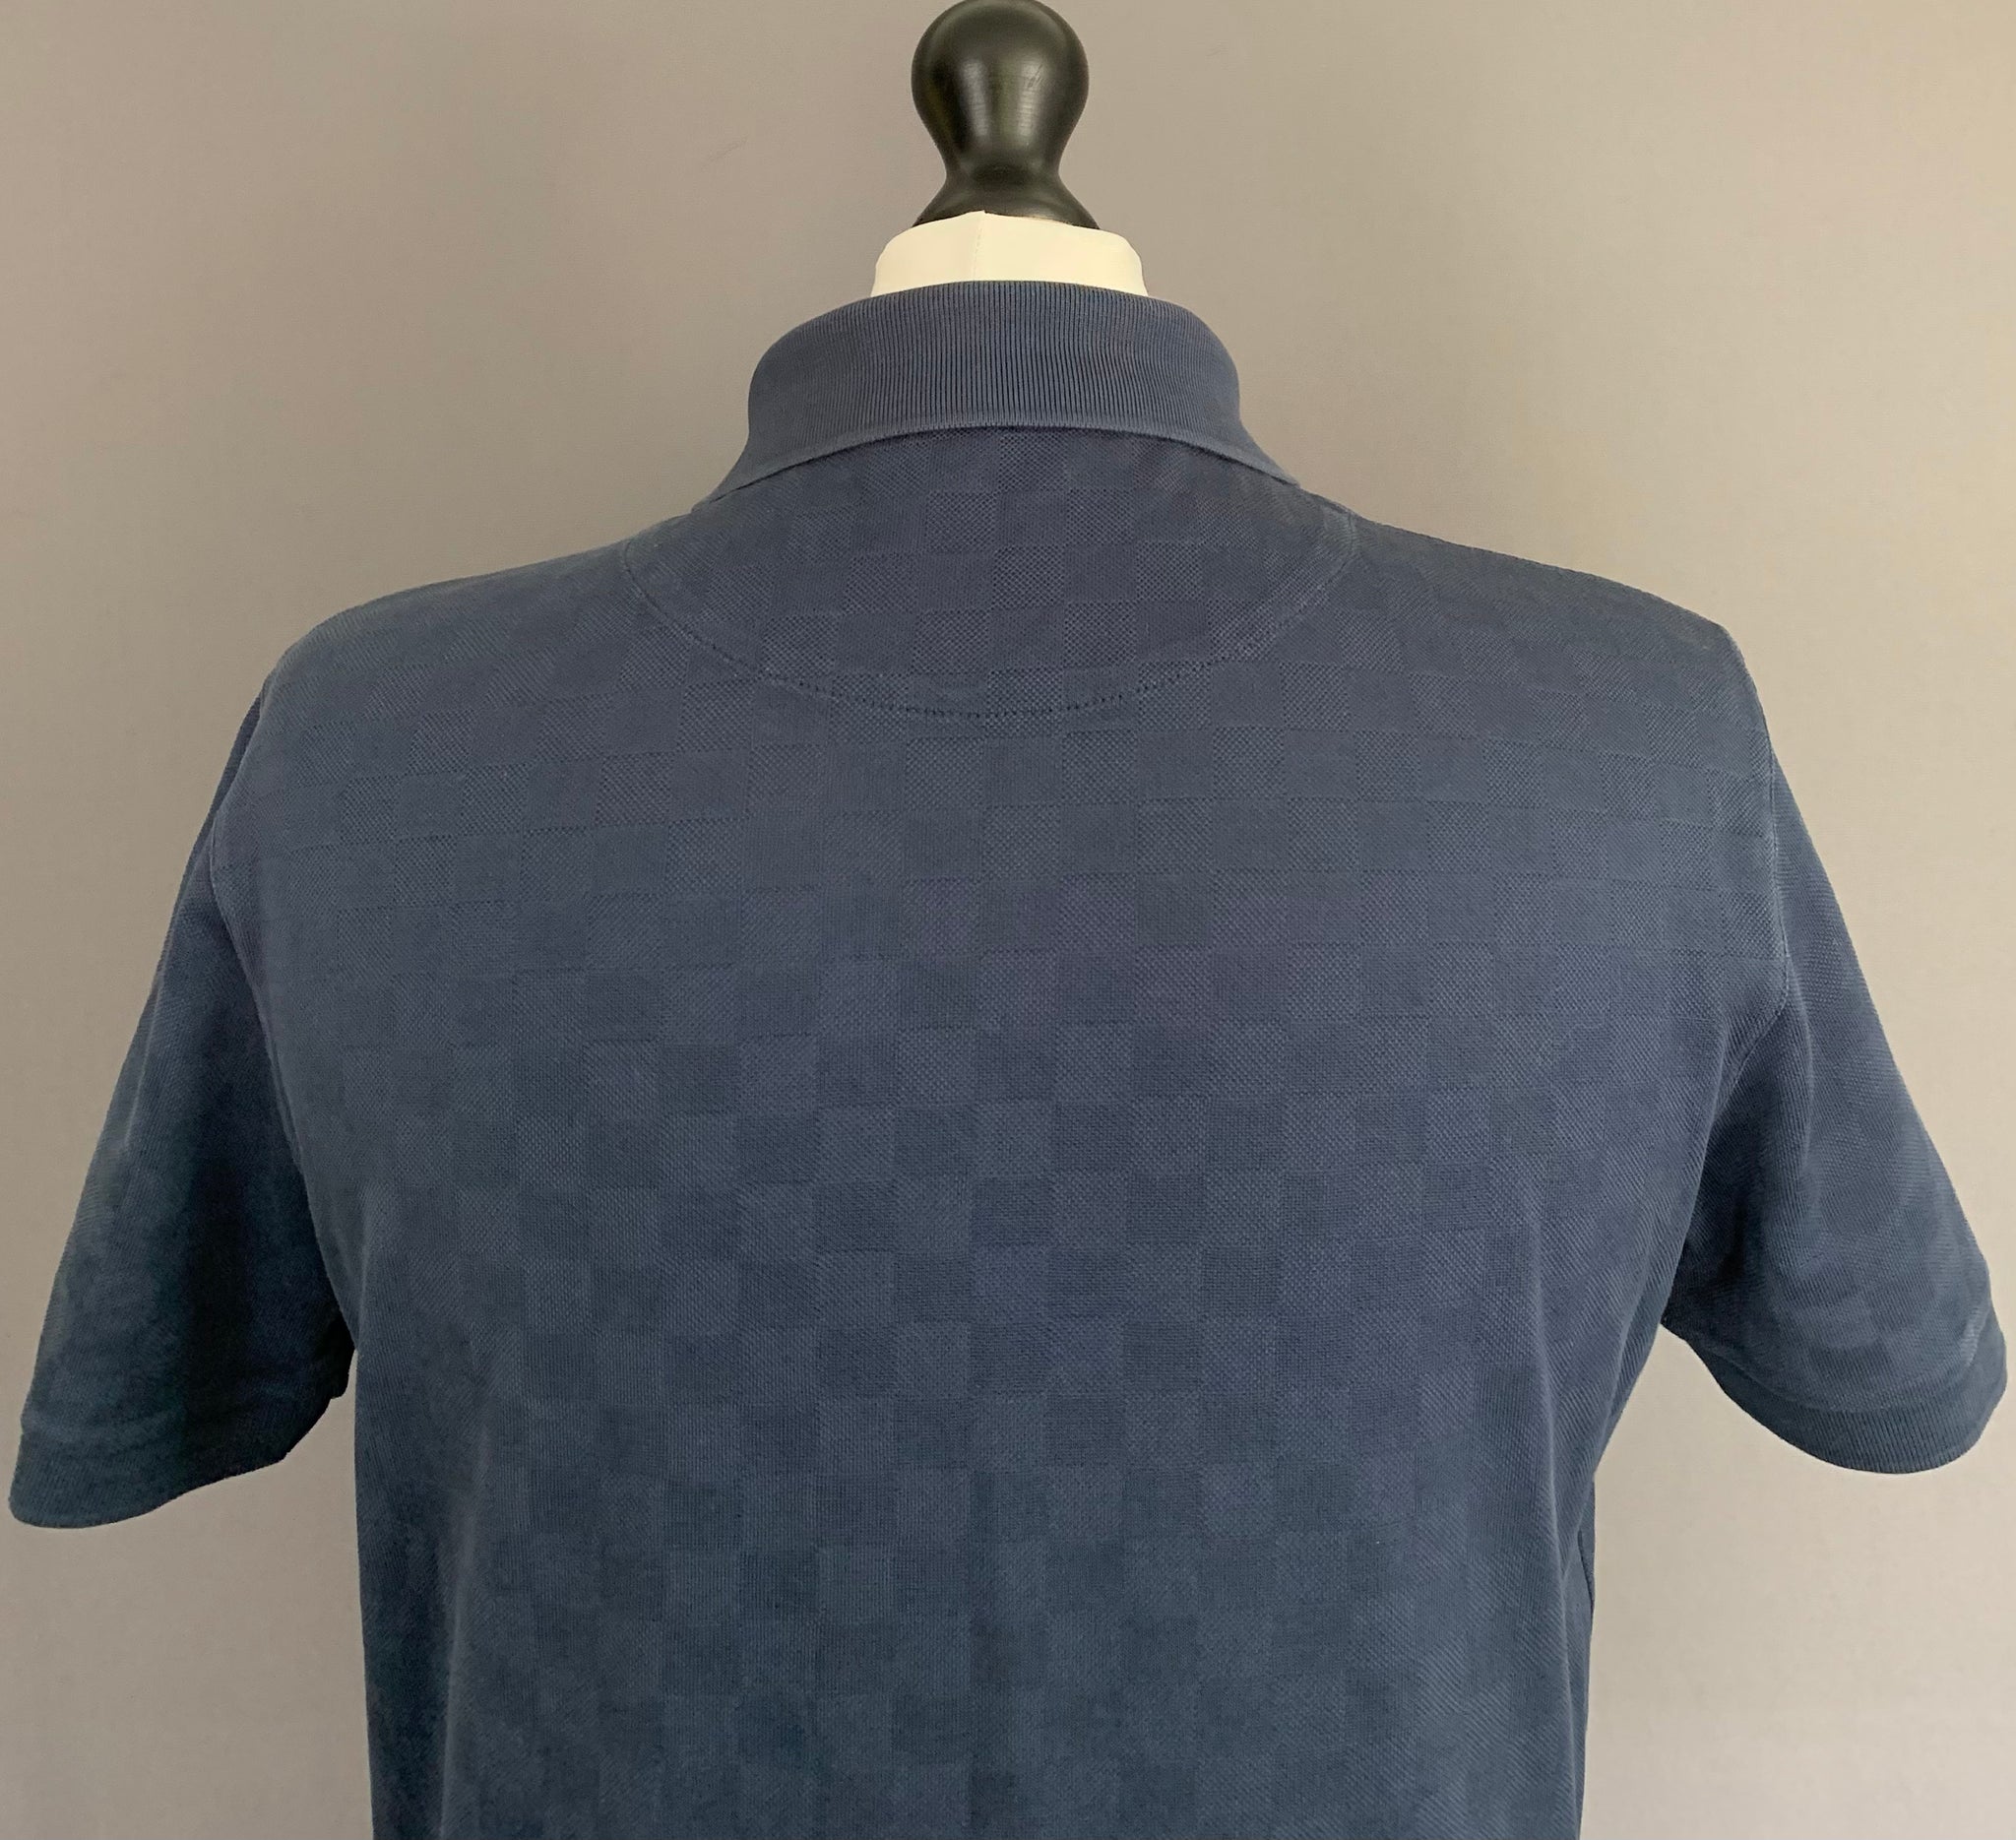 Louis Vuitton Logo Long Sleeve Polo Shirt in Navy Cotton Navy blue